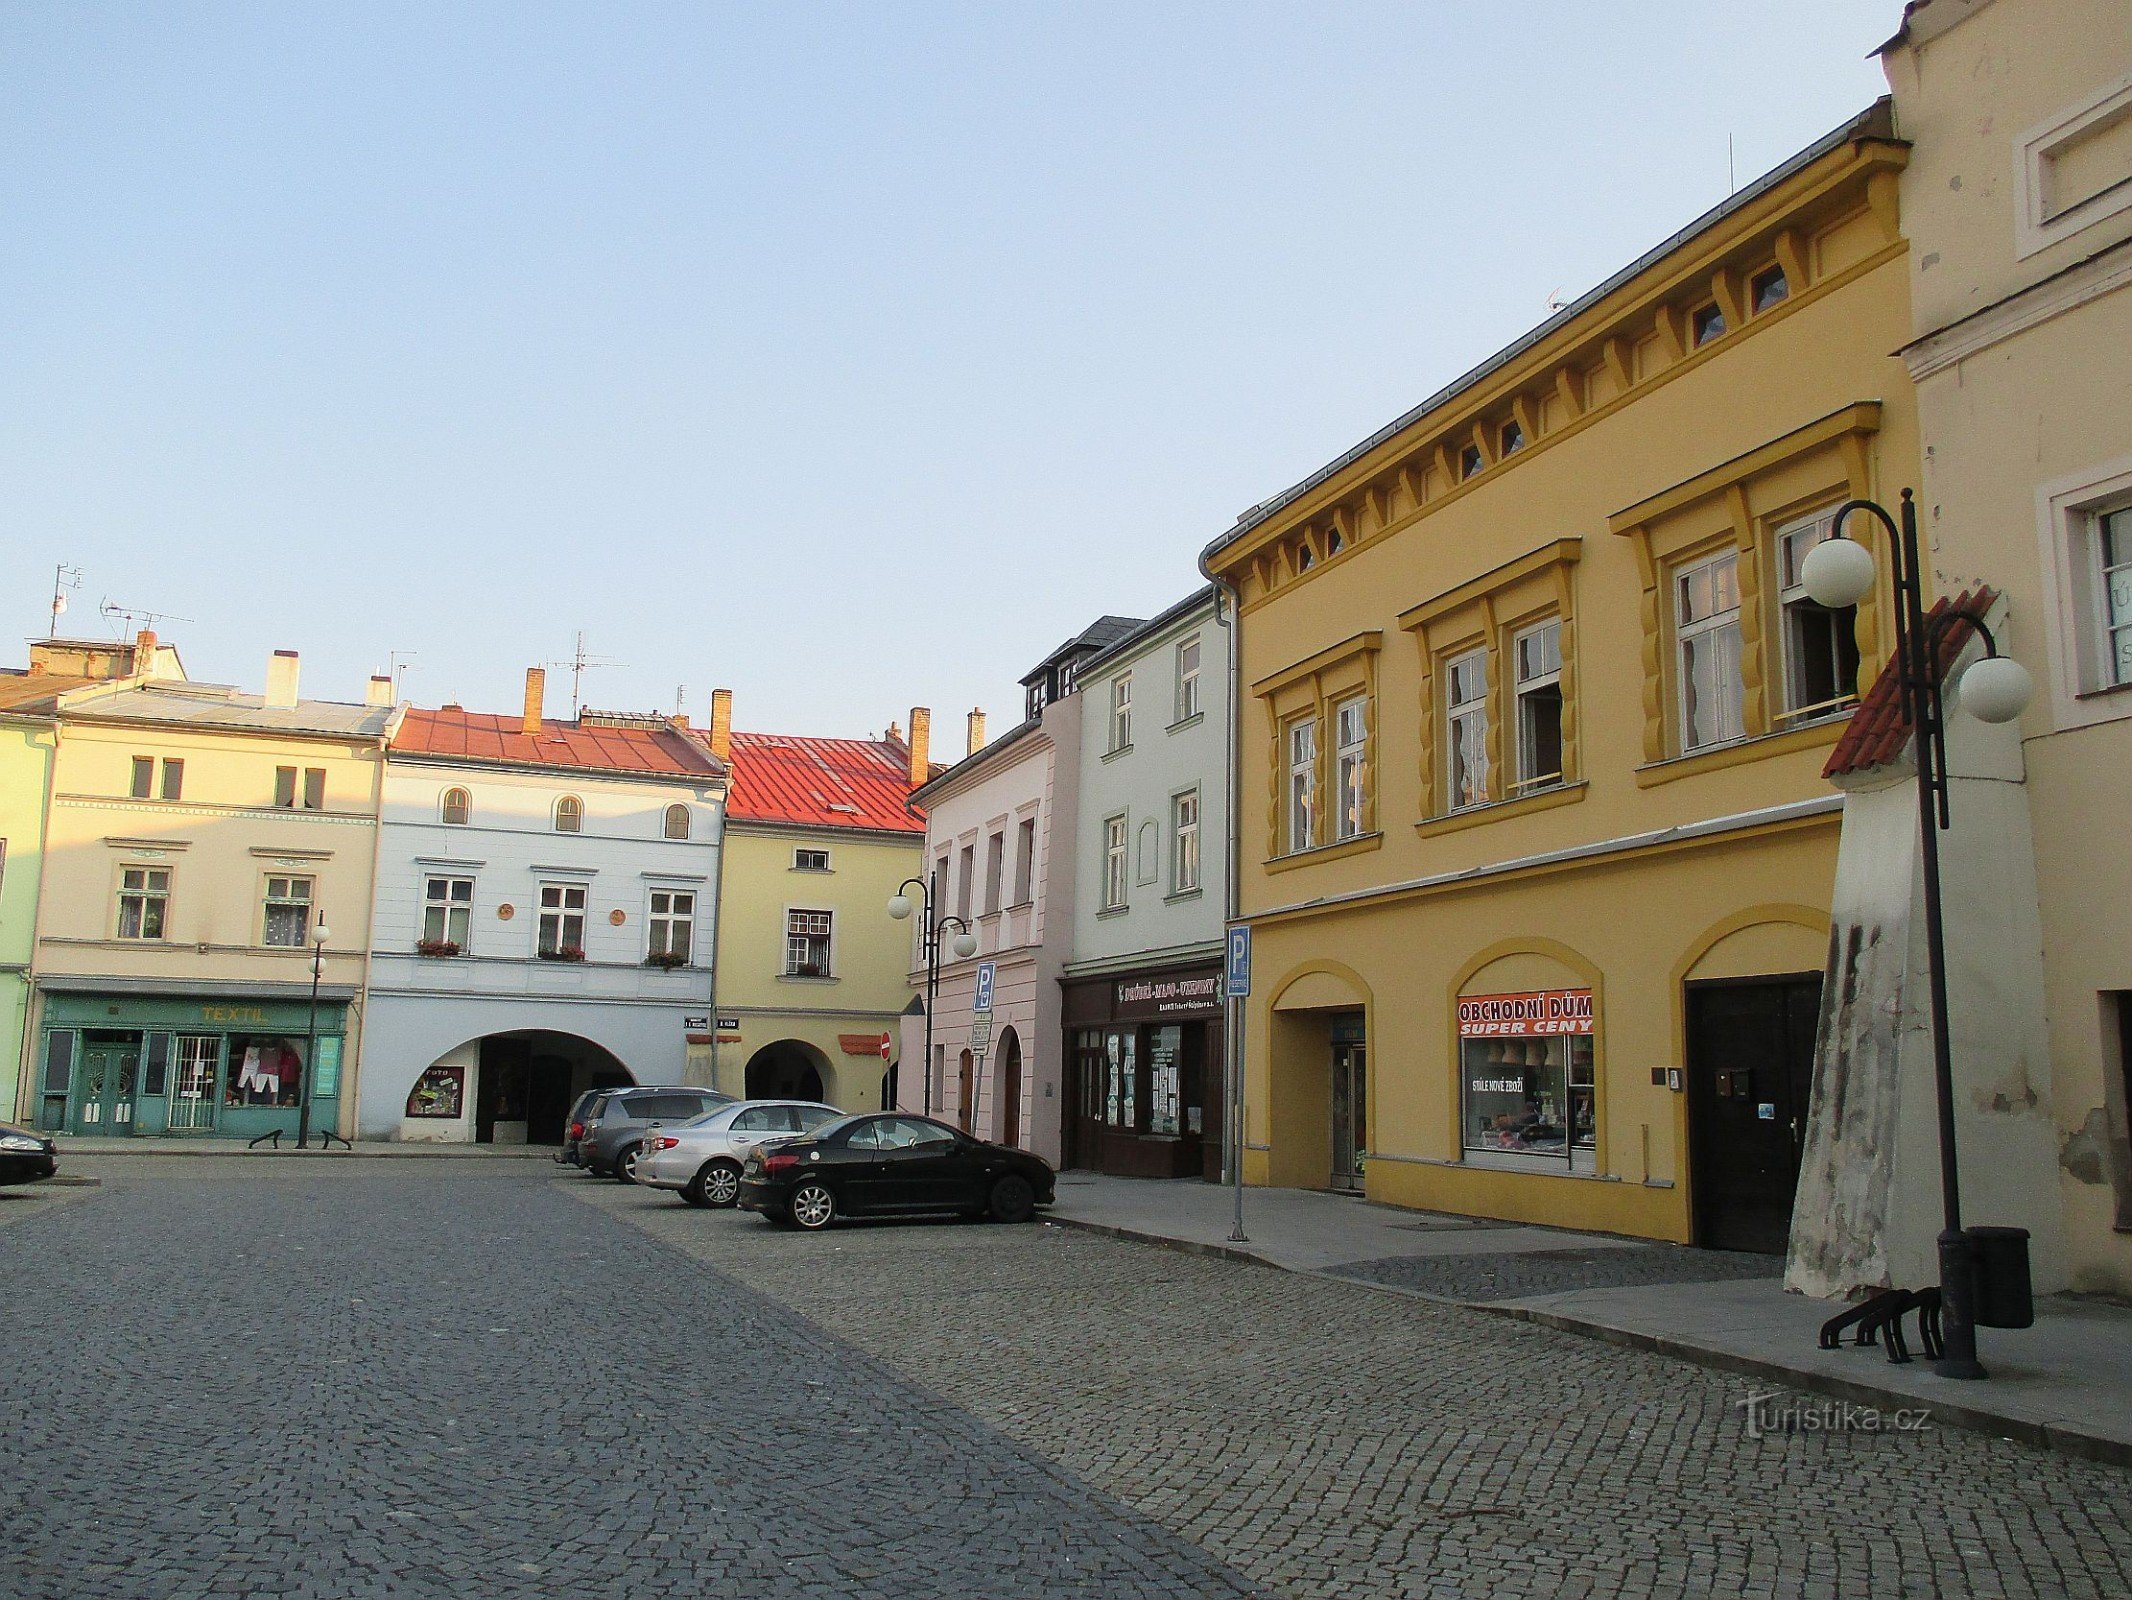 Lipník nad Bečvou - TG Masaryk tér